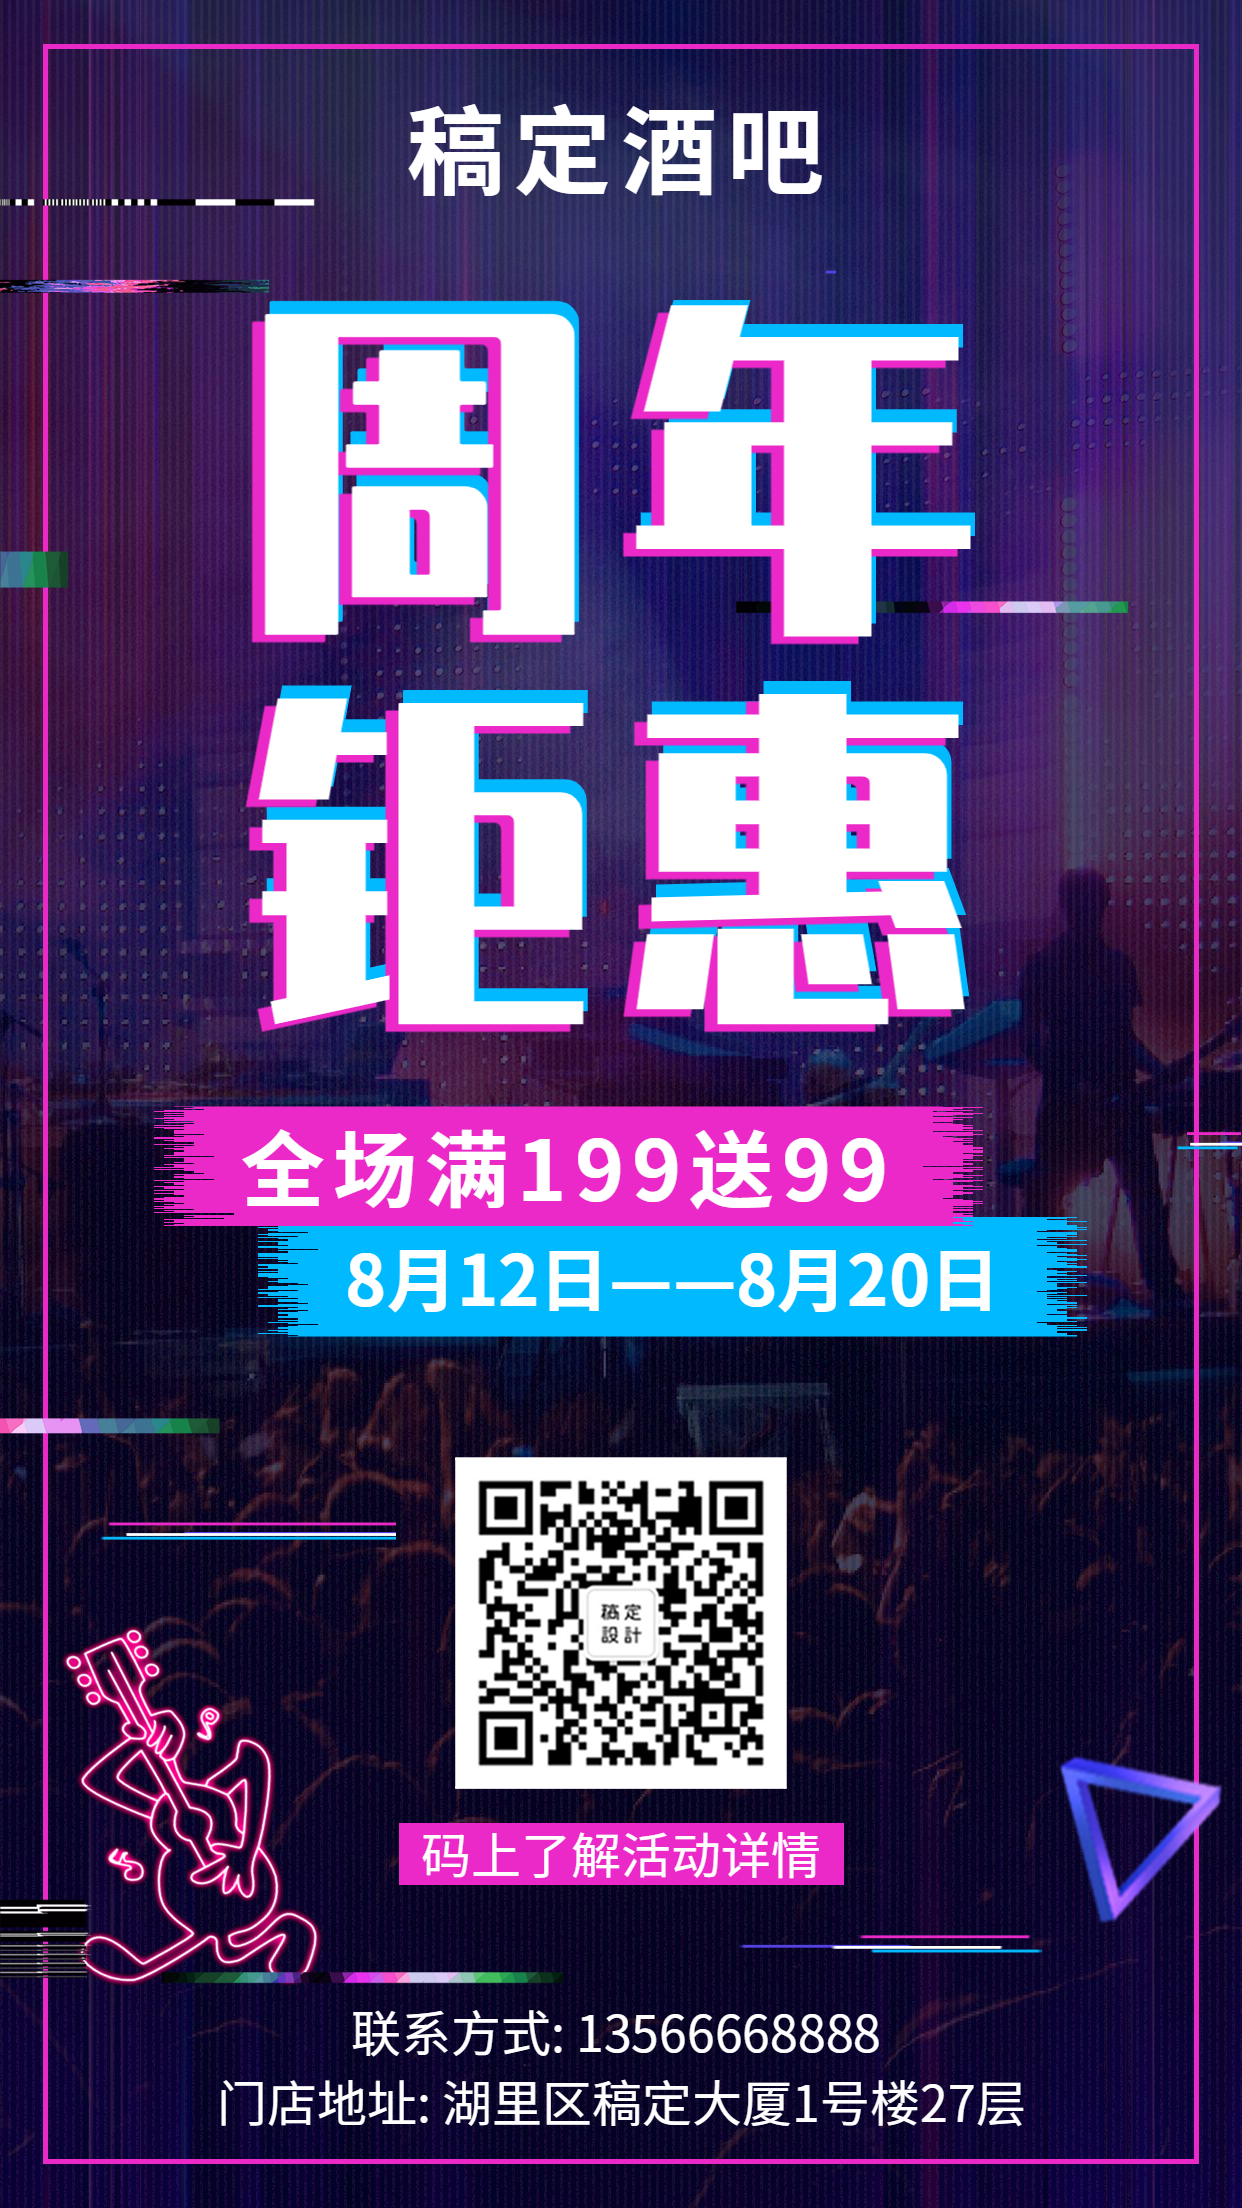 周年庆邀请函酒吧抖音酷炫手机海报预览效果